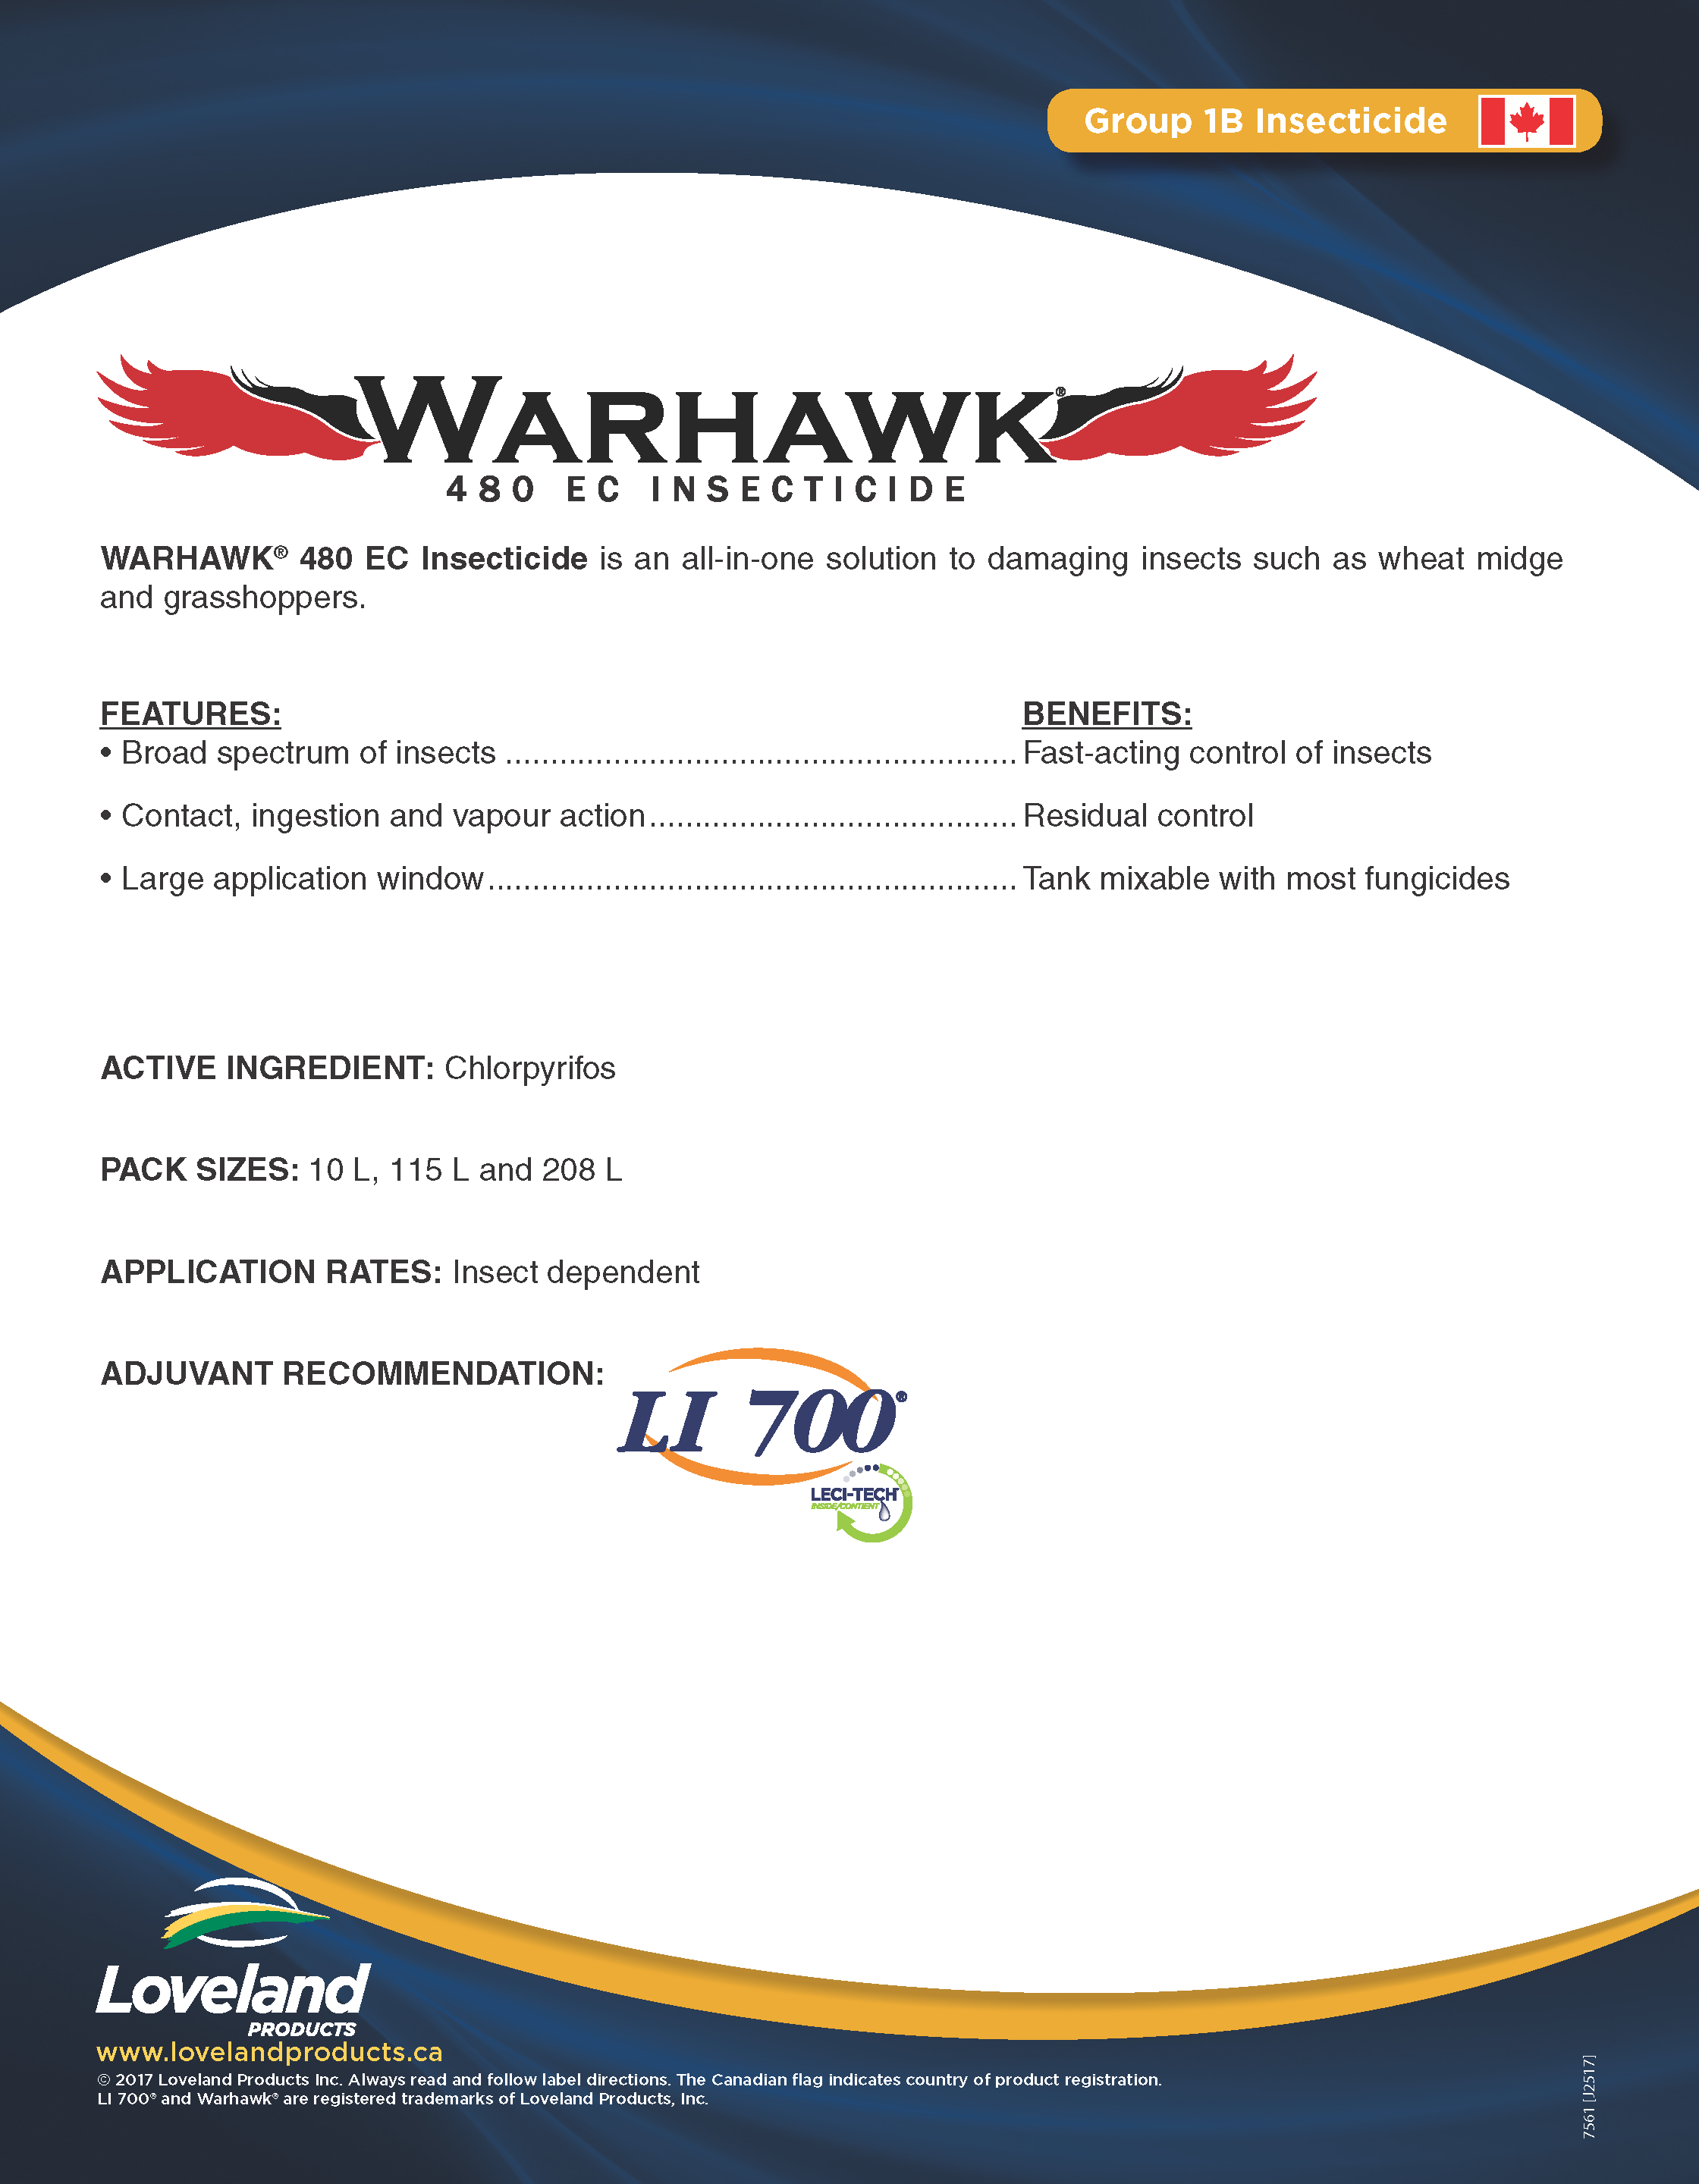 warhawk